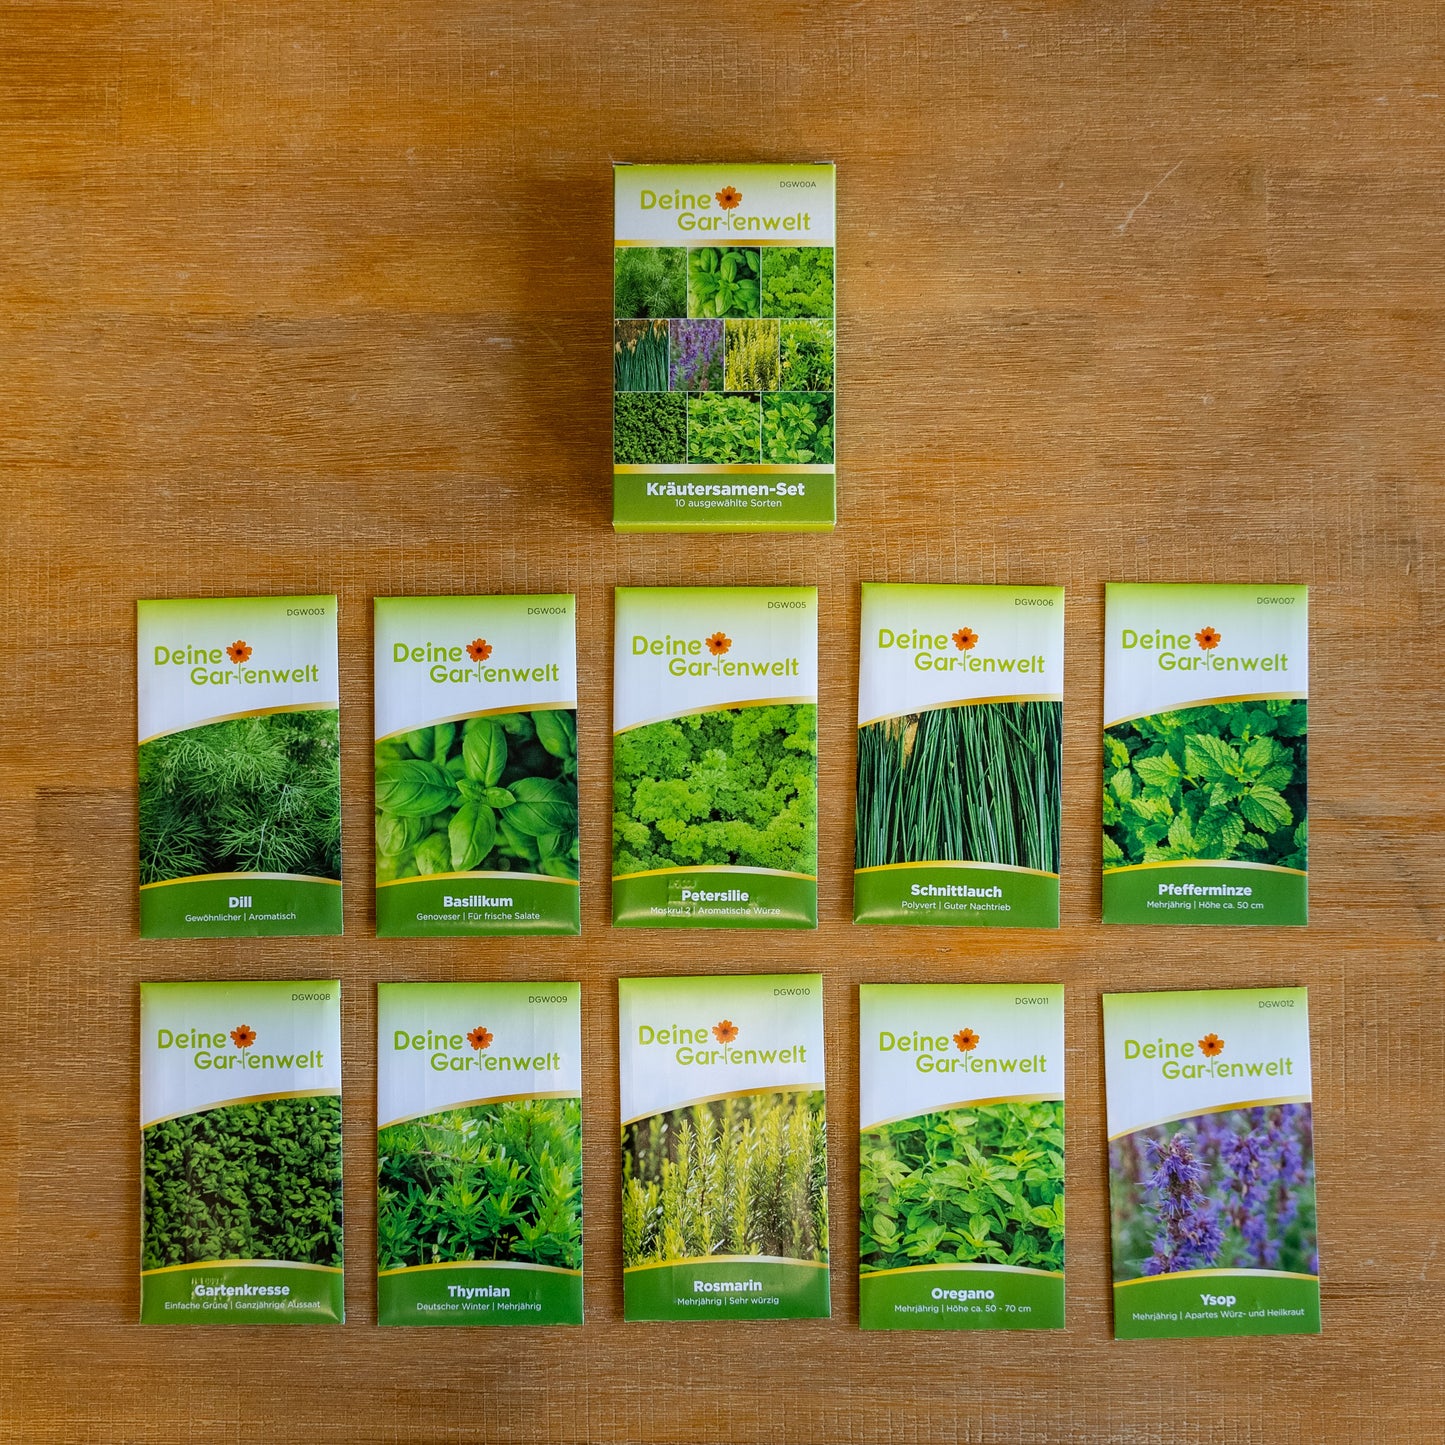 
                  
                    XL Gartencoach Samenset - Exklusives Saatgut Paket mit 50 Sorten von DeineGartenwelt
                  
                